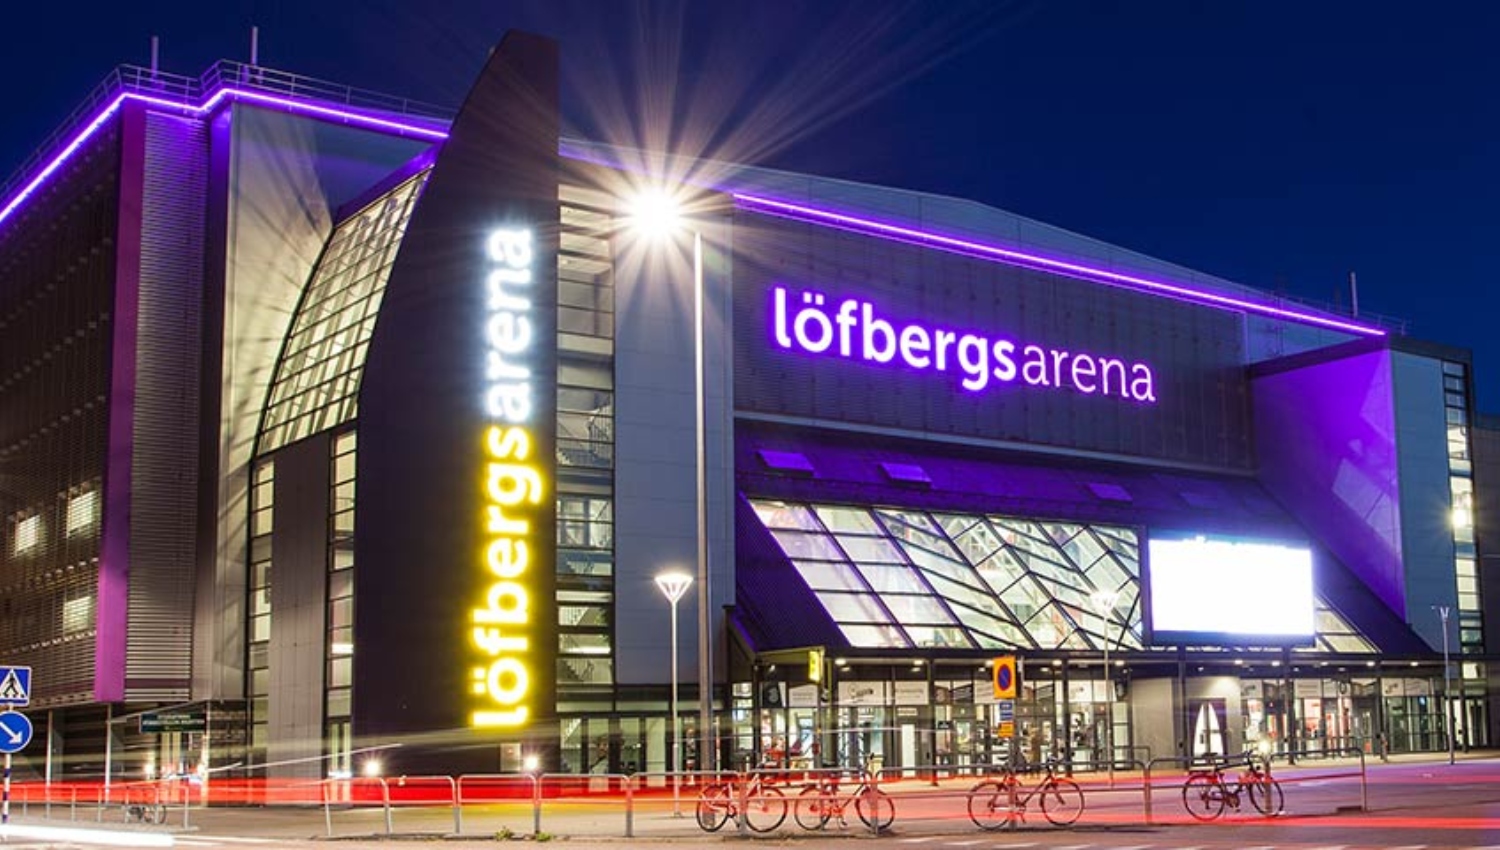 Ljusskyltar för utomhusbruk Material, design och installation - neonskylt på löfbergs arena